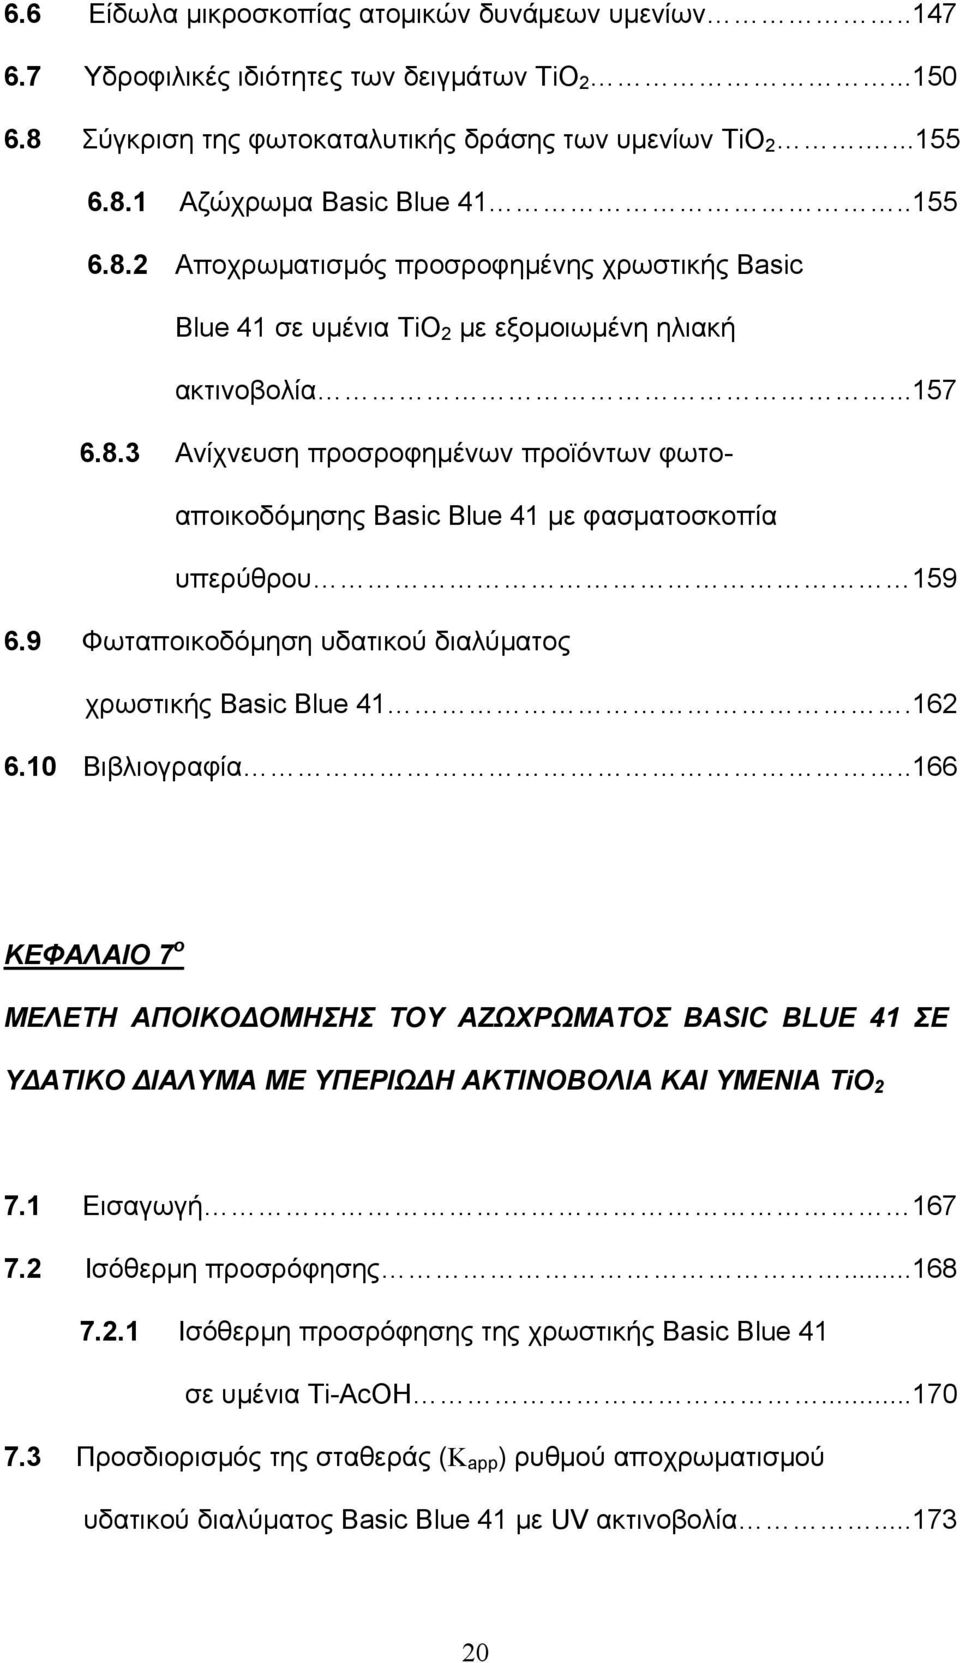 9 Φωταποικοδόμηση υδατικού διαλύματος χρωστικής Basic Blue 41.162 6.10 Βιβλιογραφία.